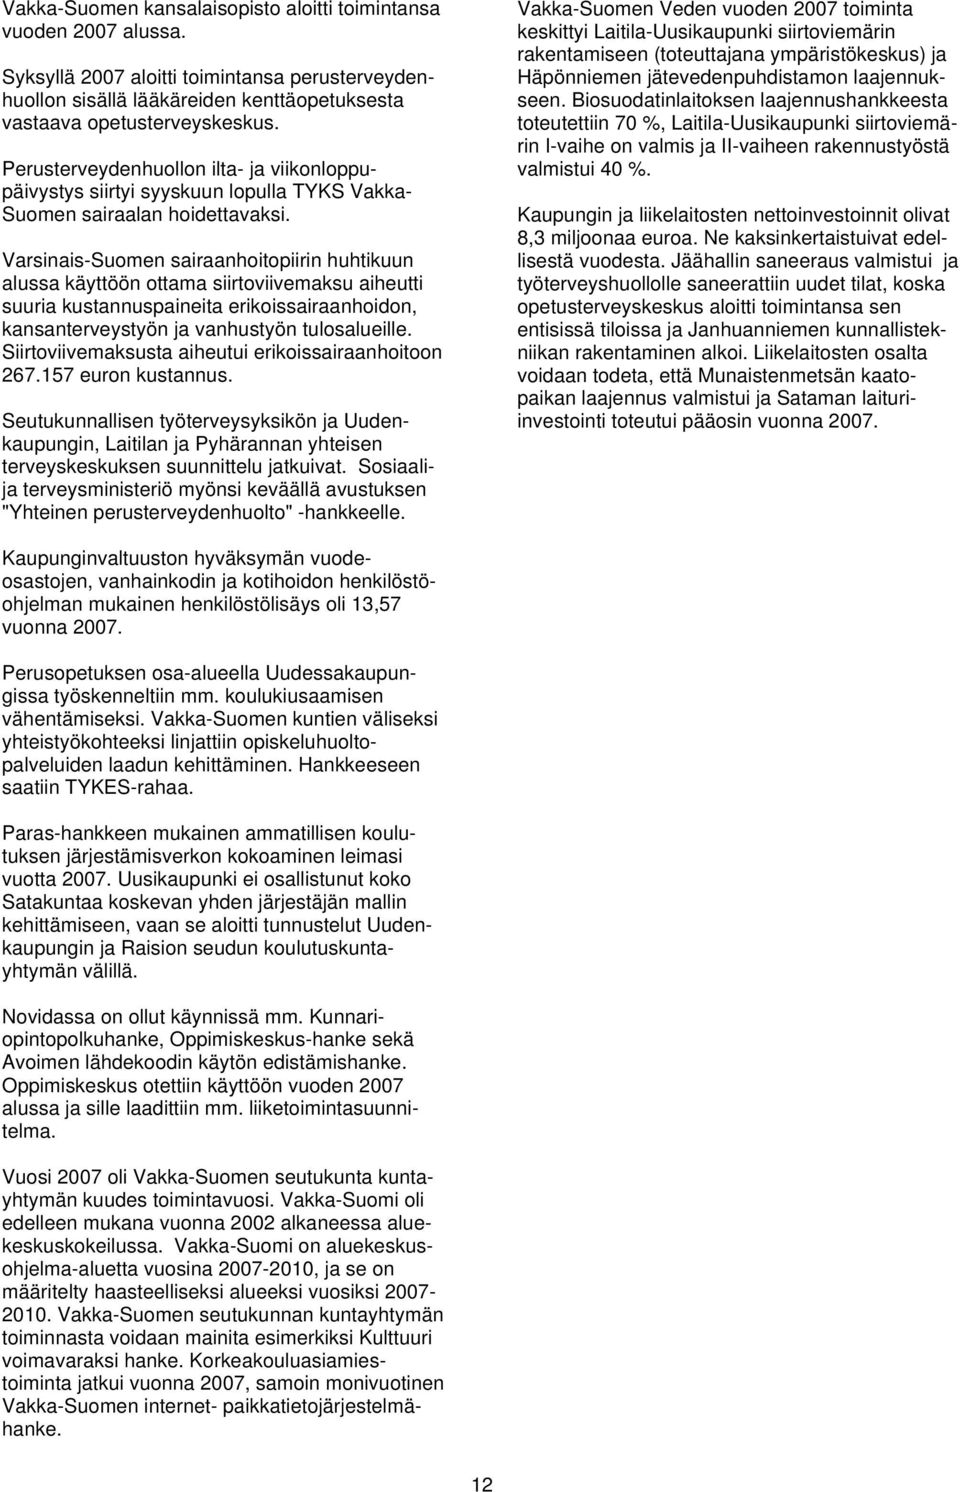 Varsinais-Suomen sairaanhoitopiirin huhtikuun alussa käyttöön ottama siirtoviivemaksu aiheutti suuria kustannuspaineita erikoissairaanhoidon, kansanterveystyön ja vanhustyön tulosalueille.